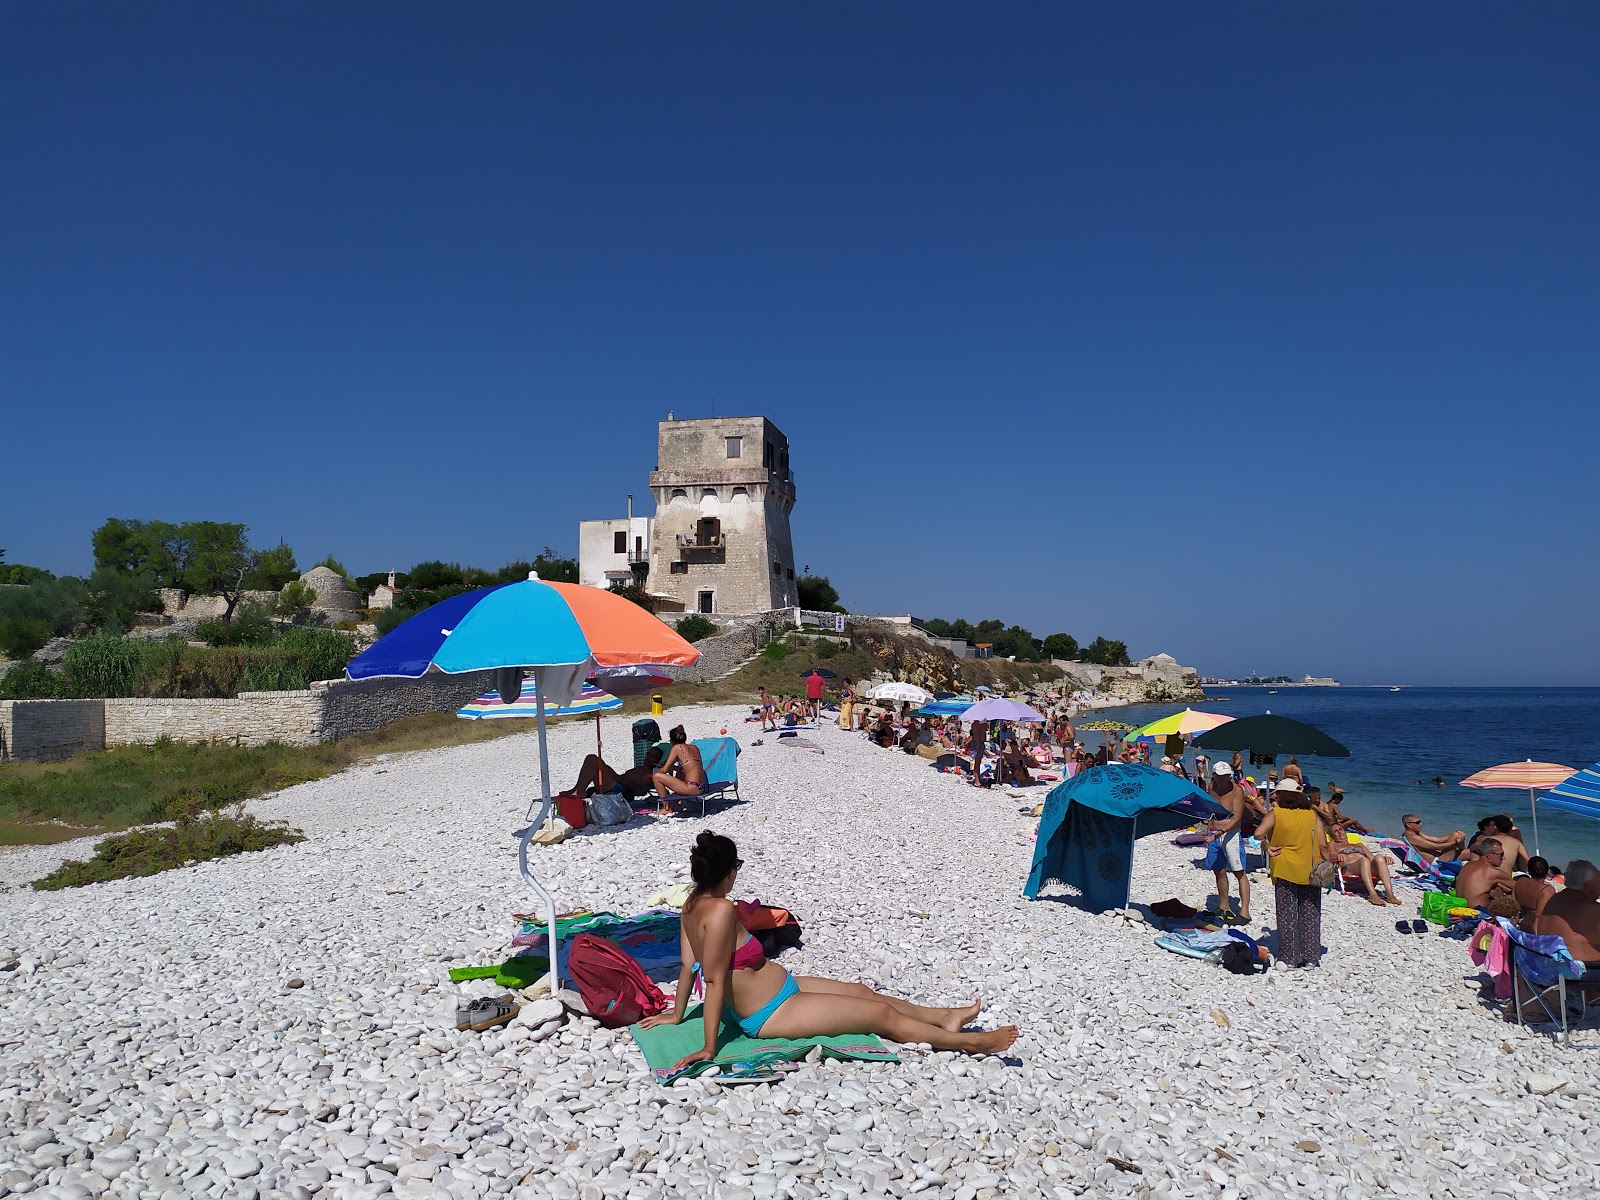 Foto av Spiaggia La Torretta med lätt sten yta